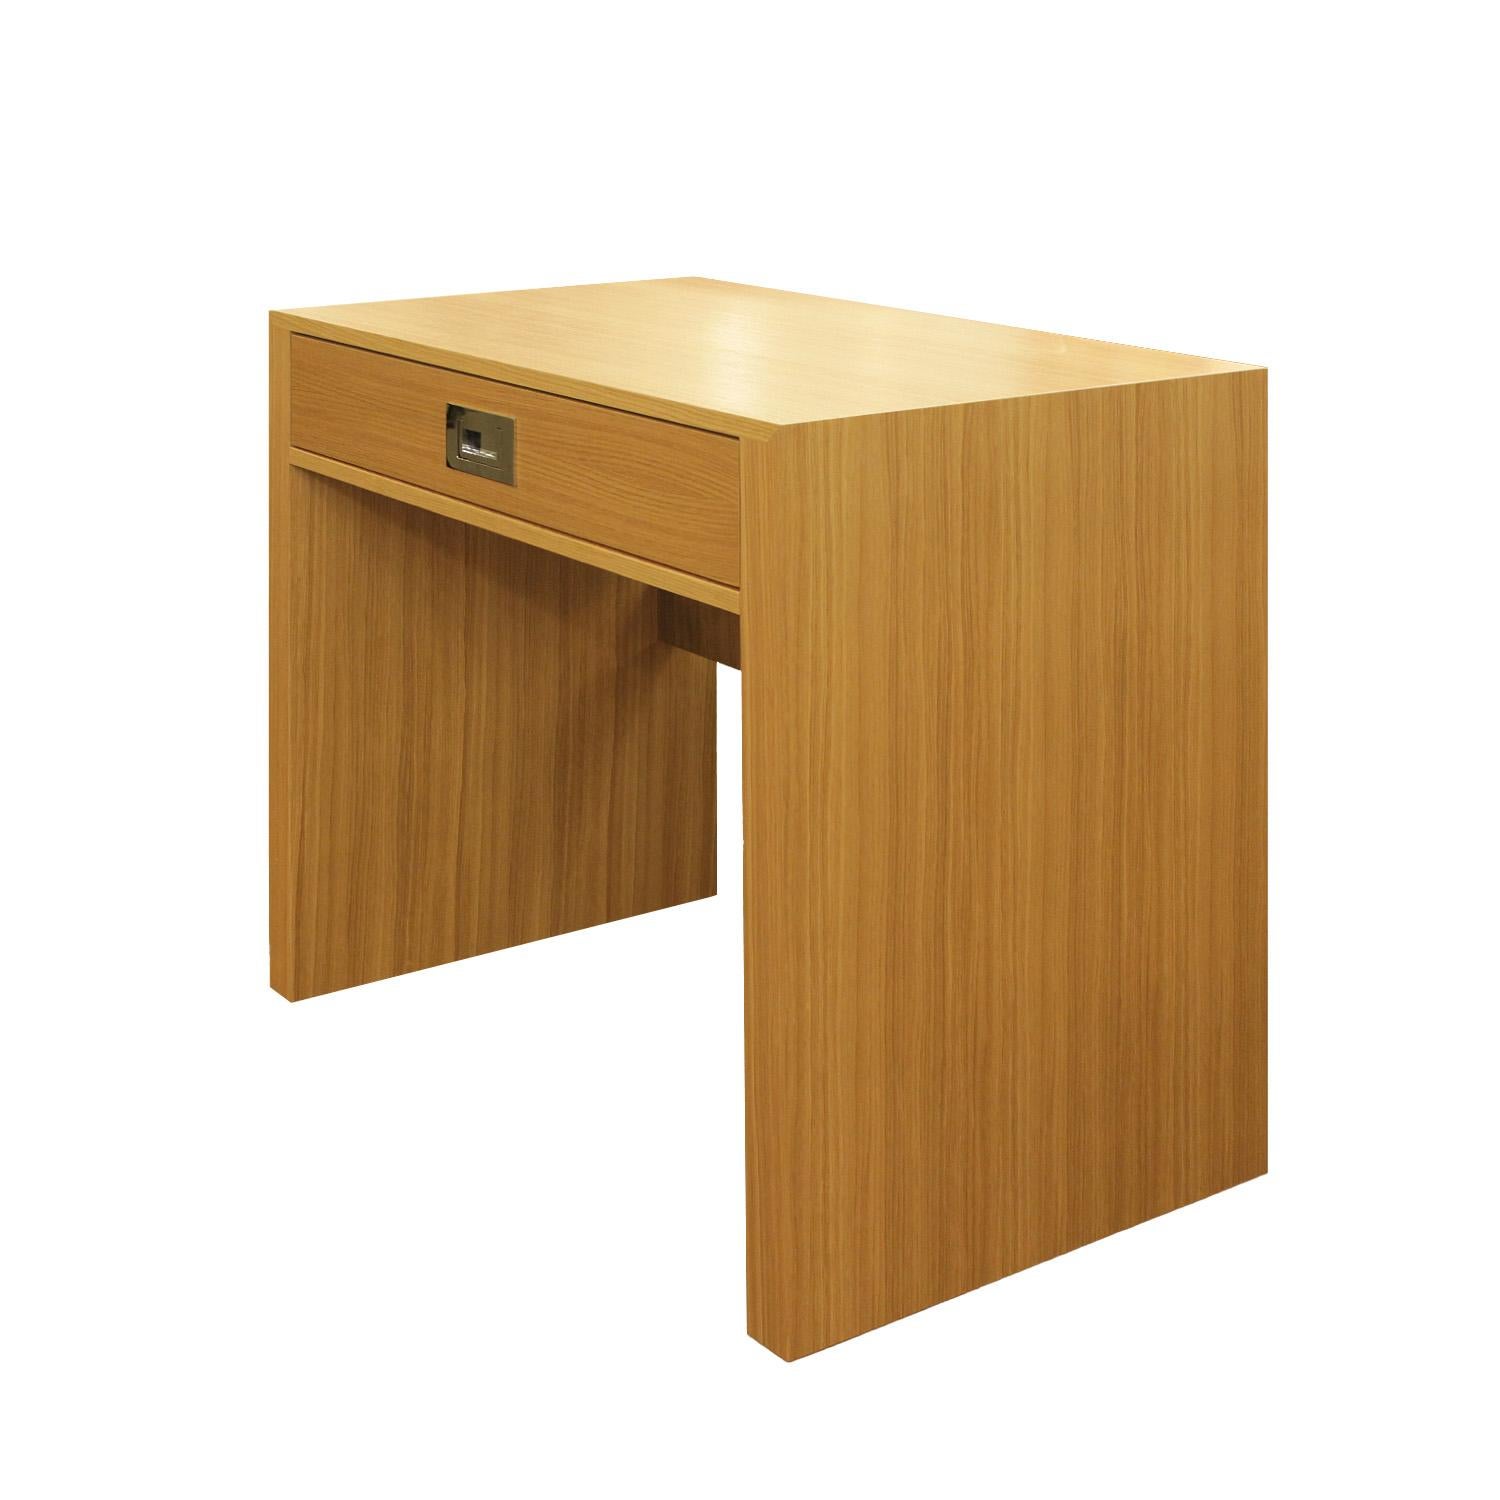 Auf Bestellung gefertigter Schreibtisch mit einer Schublade aus Eichenholz mit verchromten Latten und Beschlägen.

Erhältlich in kundenspezifischen Abmessungen und Ausführungen.